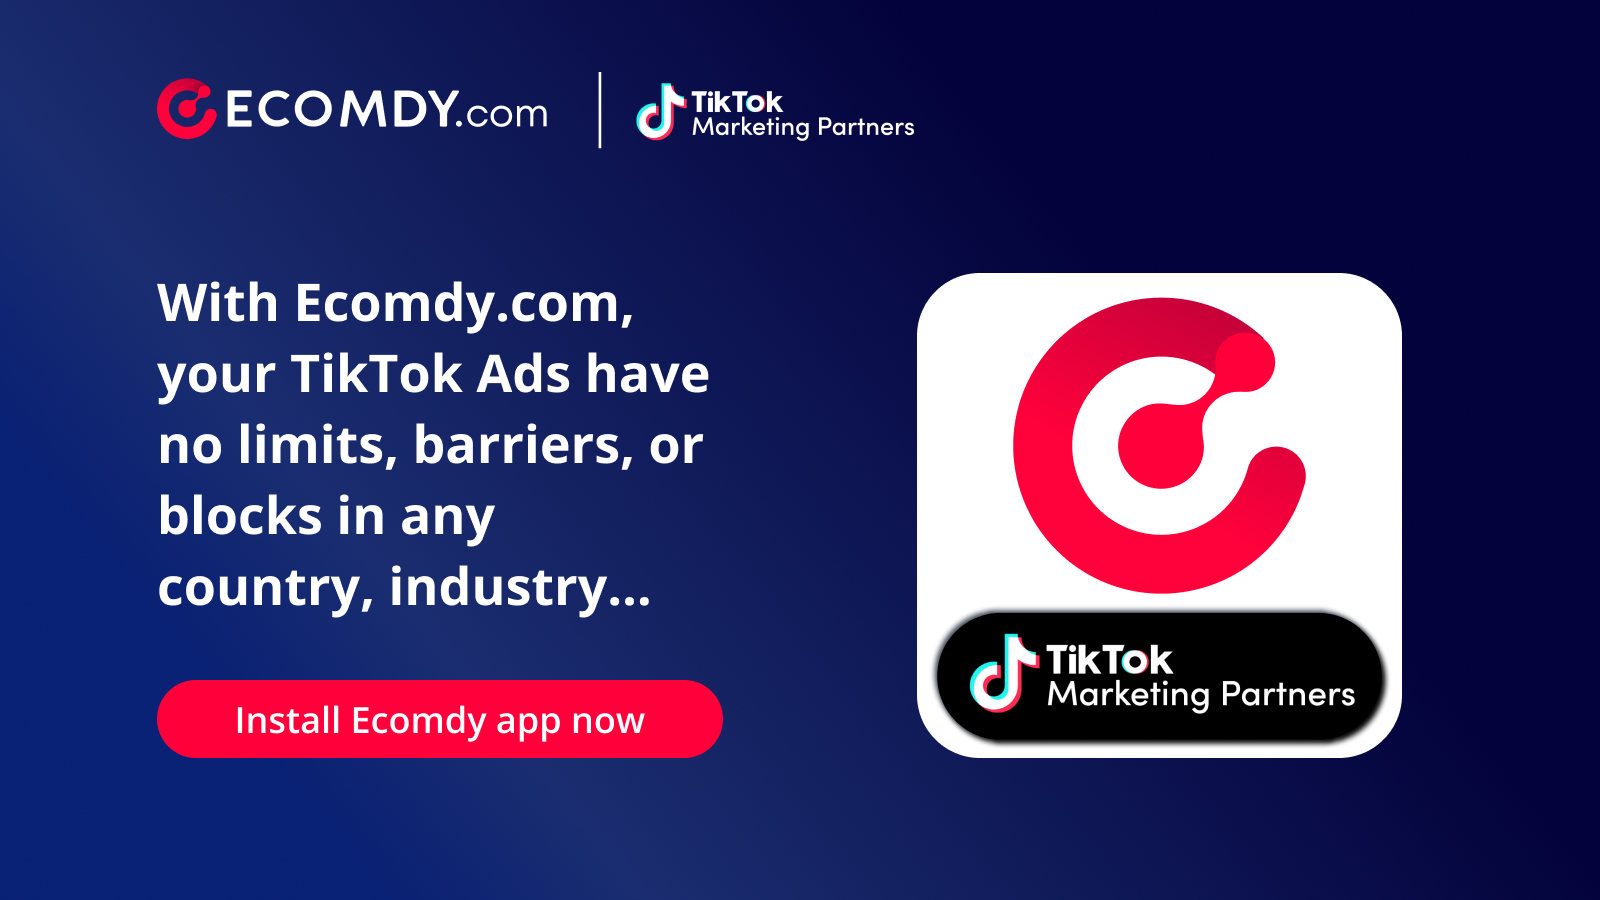 Ecomdy.com - Official TikTok Marketing Partner